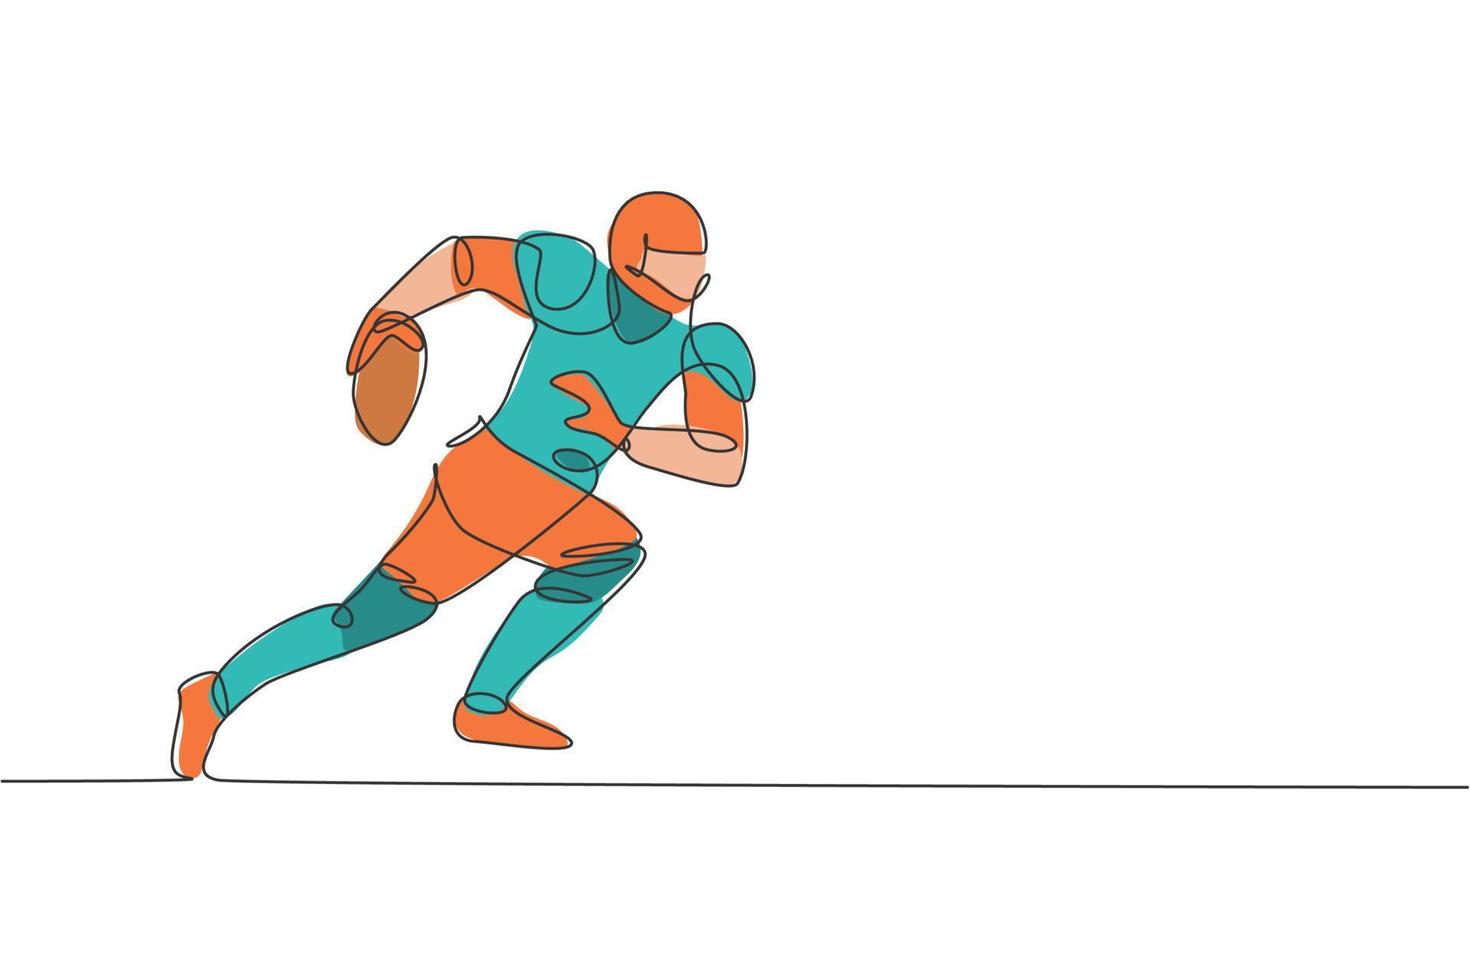 un jugador deportivo de fútbol americano que dibuja una línea continua corriendo rápido para alcanzar la línea de gol para el afiche de la competencia. concepto de trabajo en equipo deportivo. Ilustración gráfica de vector de diseño de dibujo de línea única dinámica